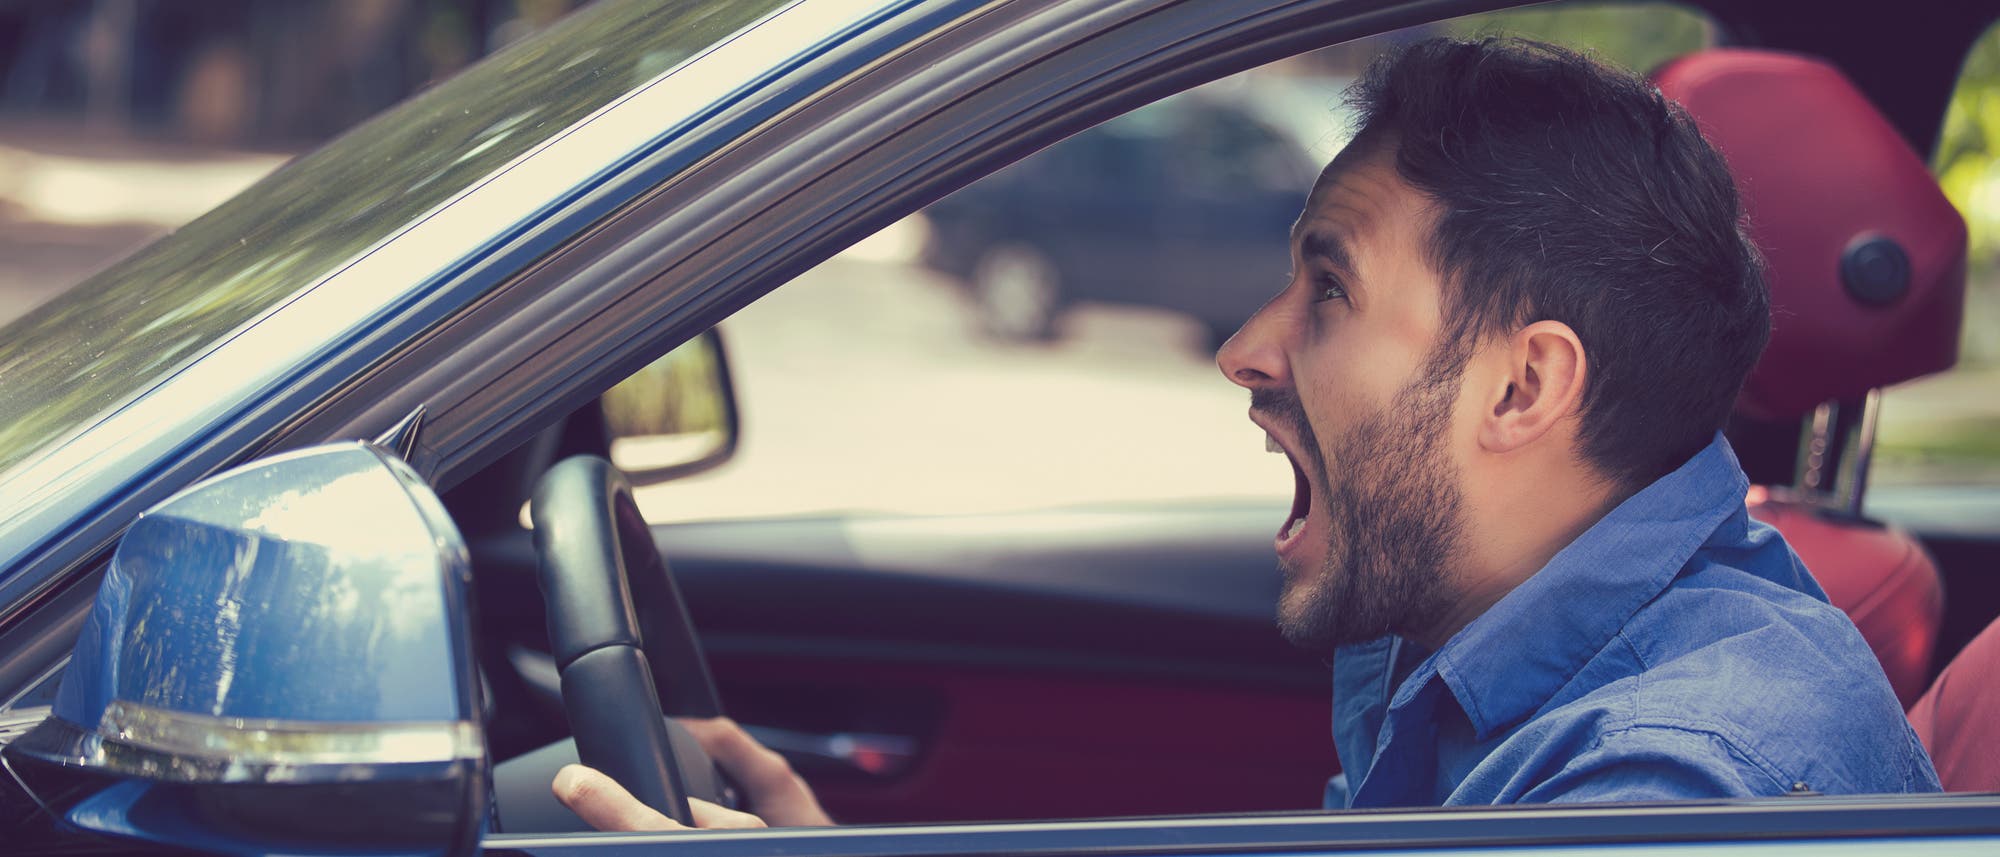 Autofahrer schreit entnervt